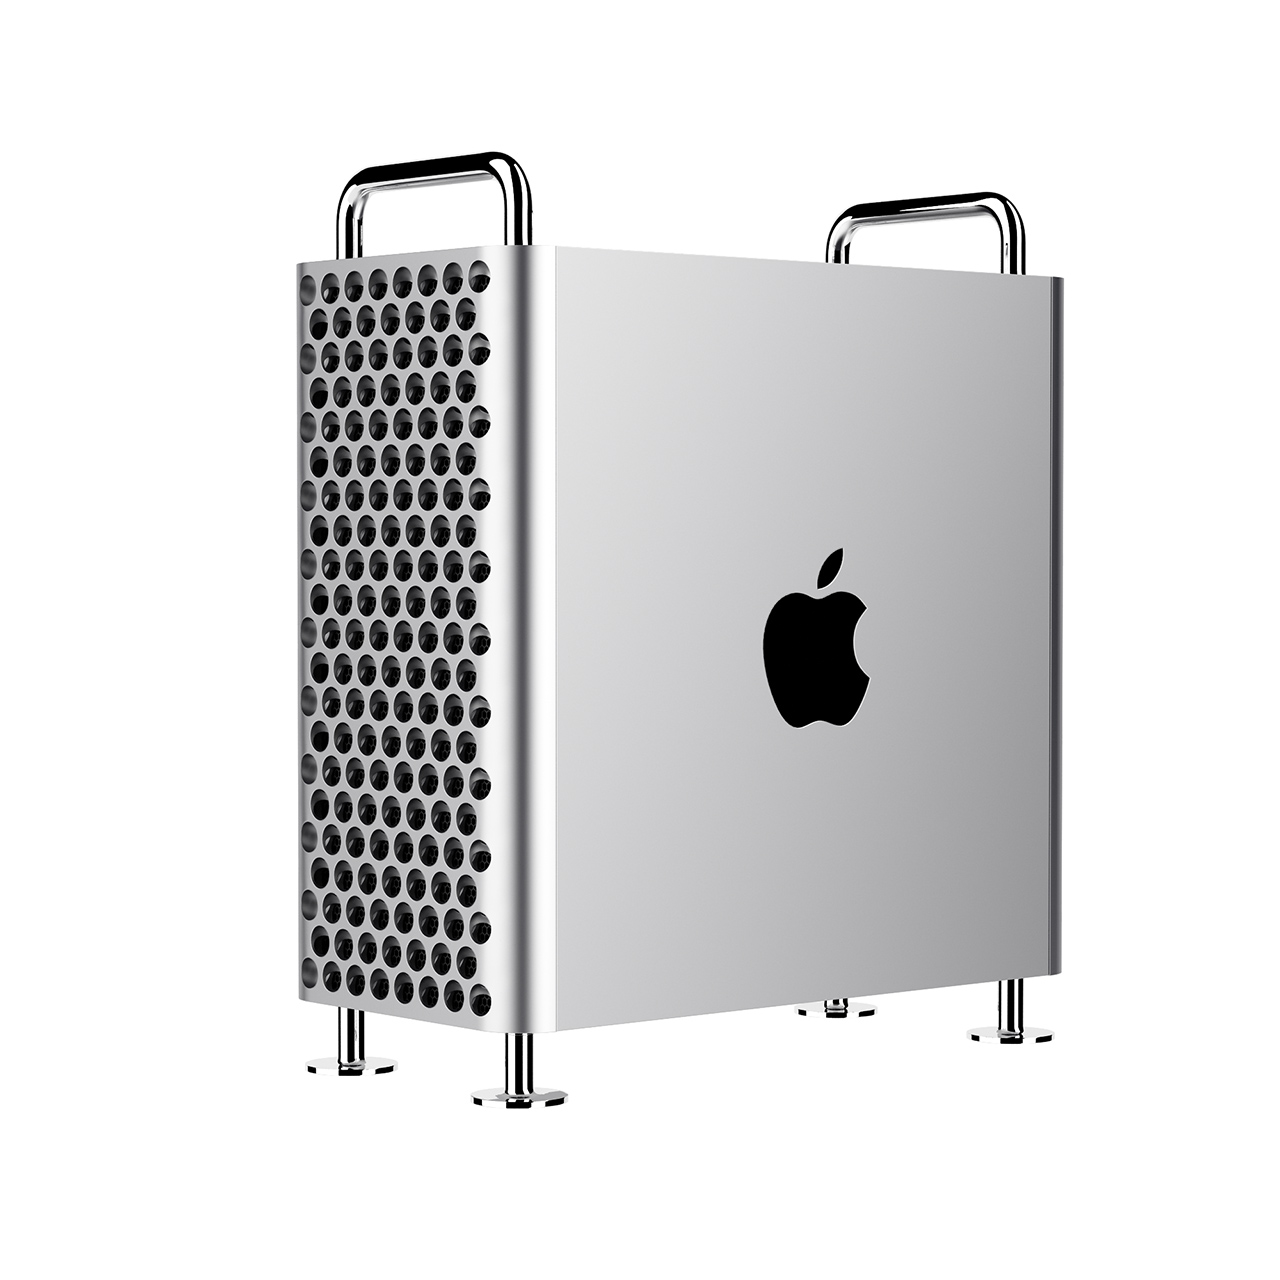 mac-pro-2019-workstation-by-apple.jpg